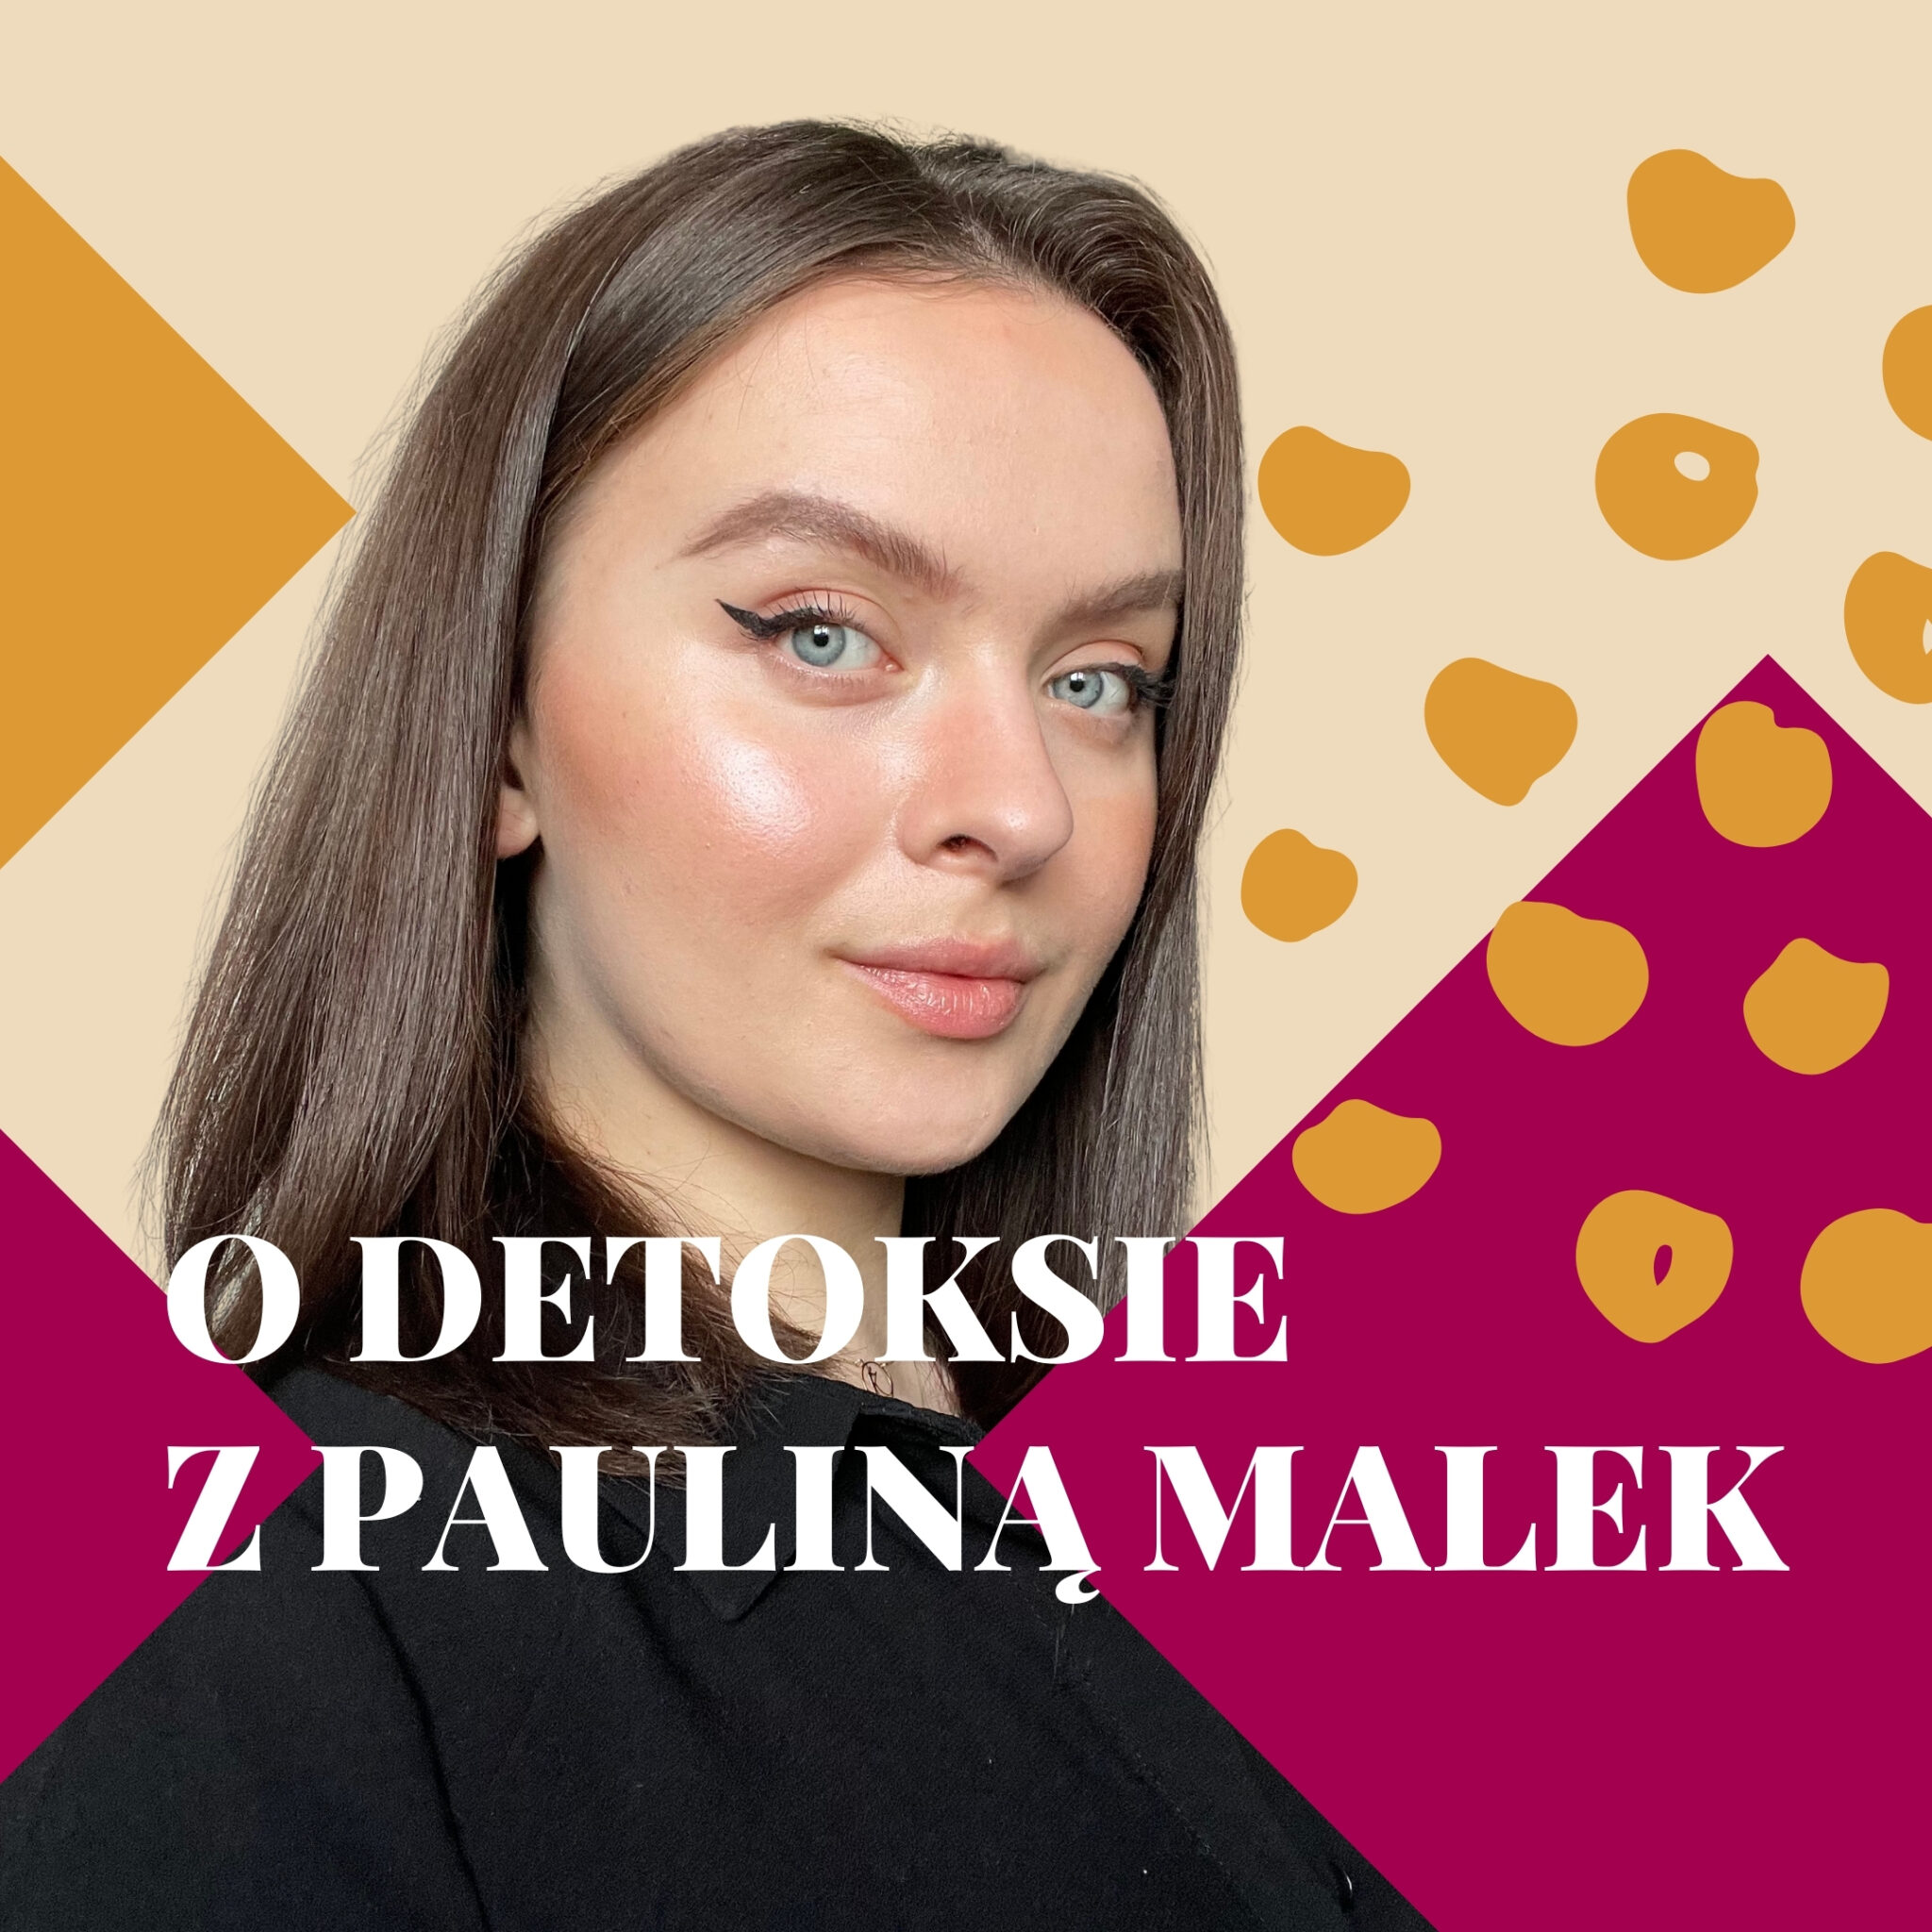 Skuteczny detoks - Paulina Malek w rozmowie z Ulą galantalala.pl